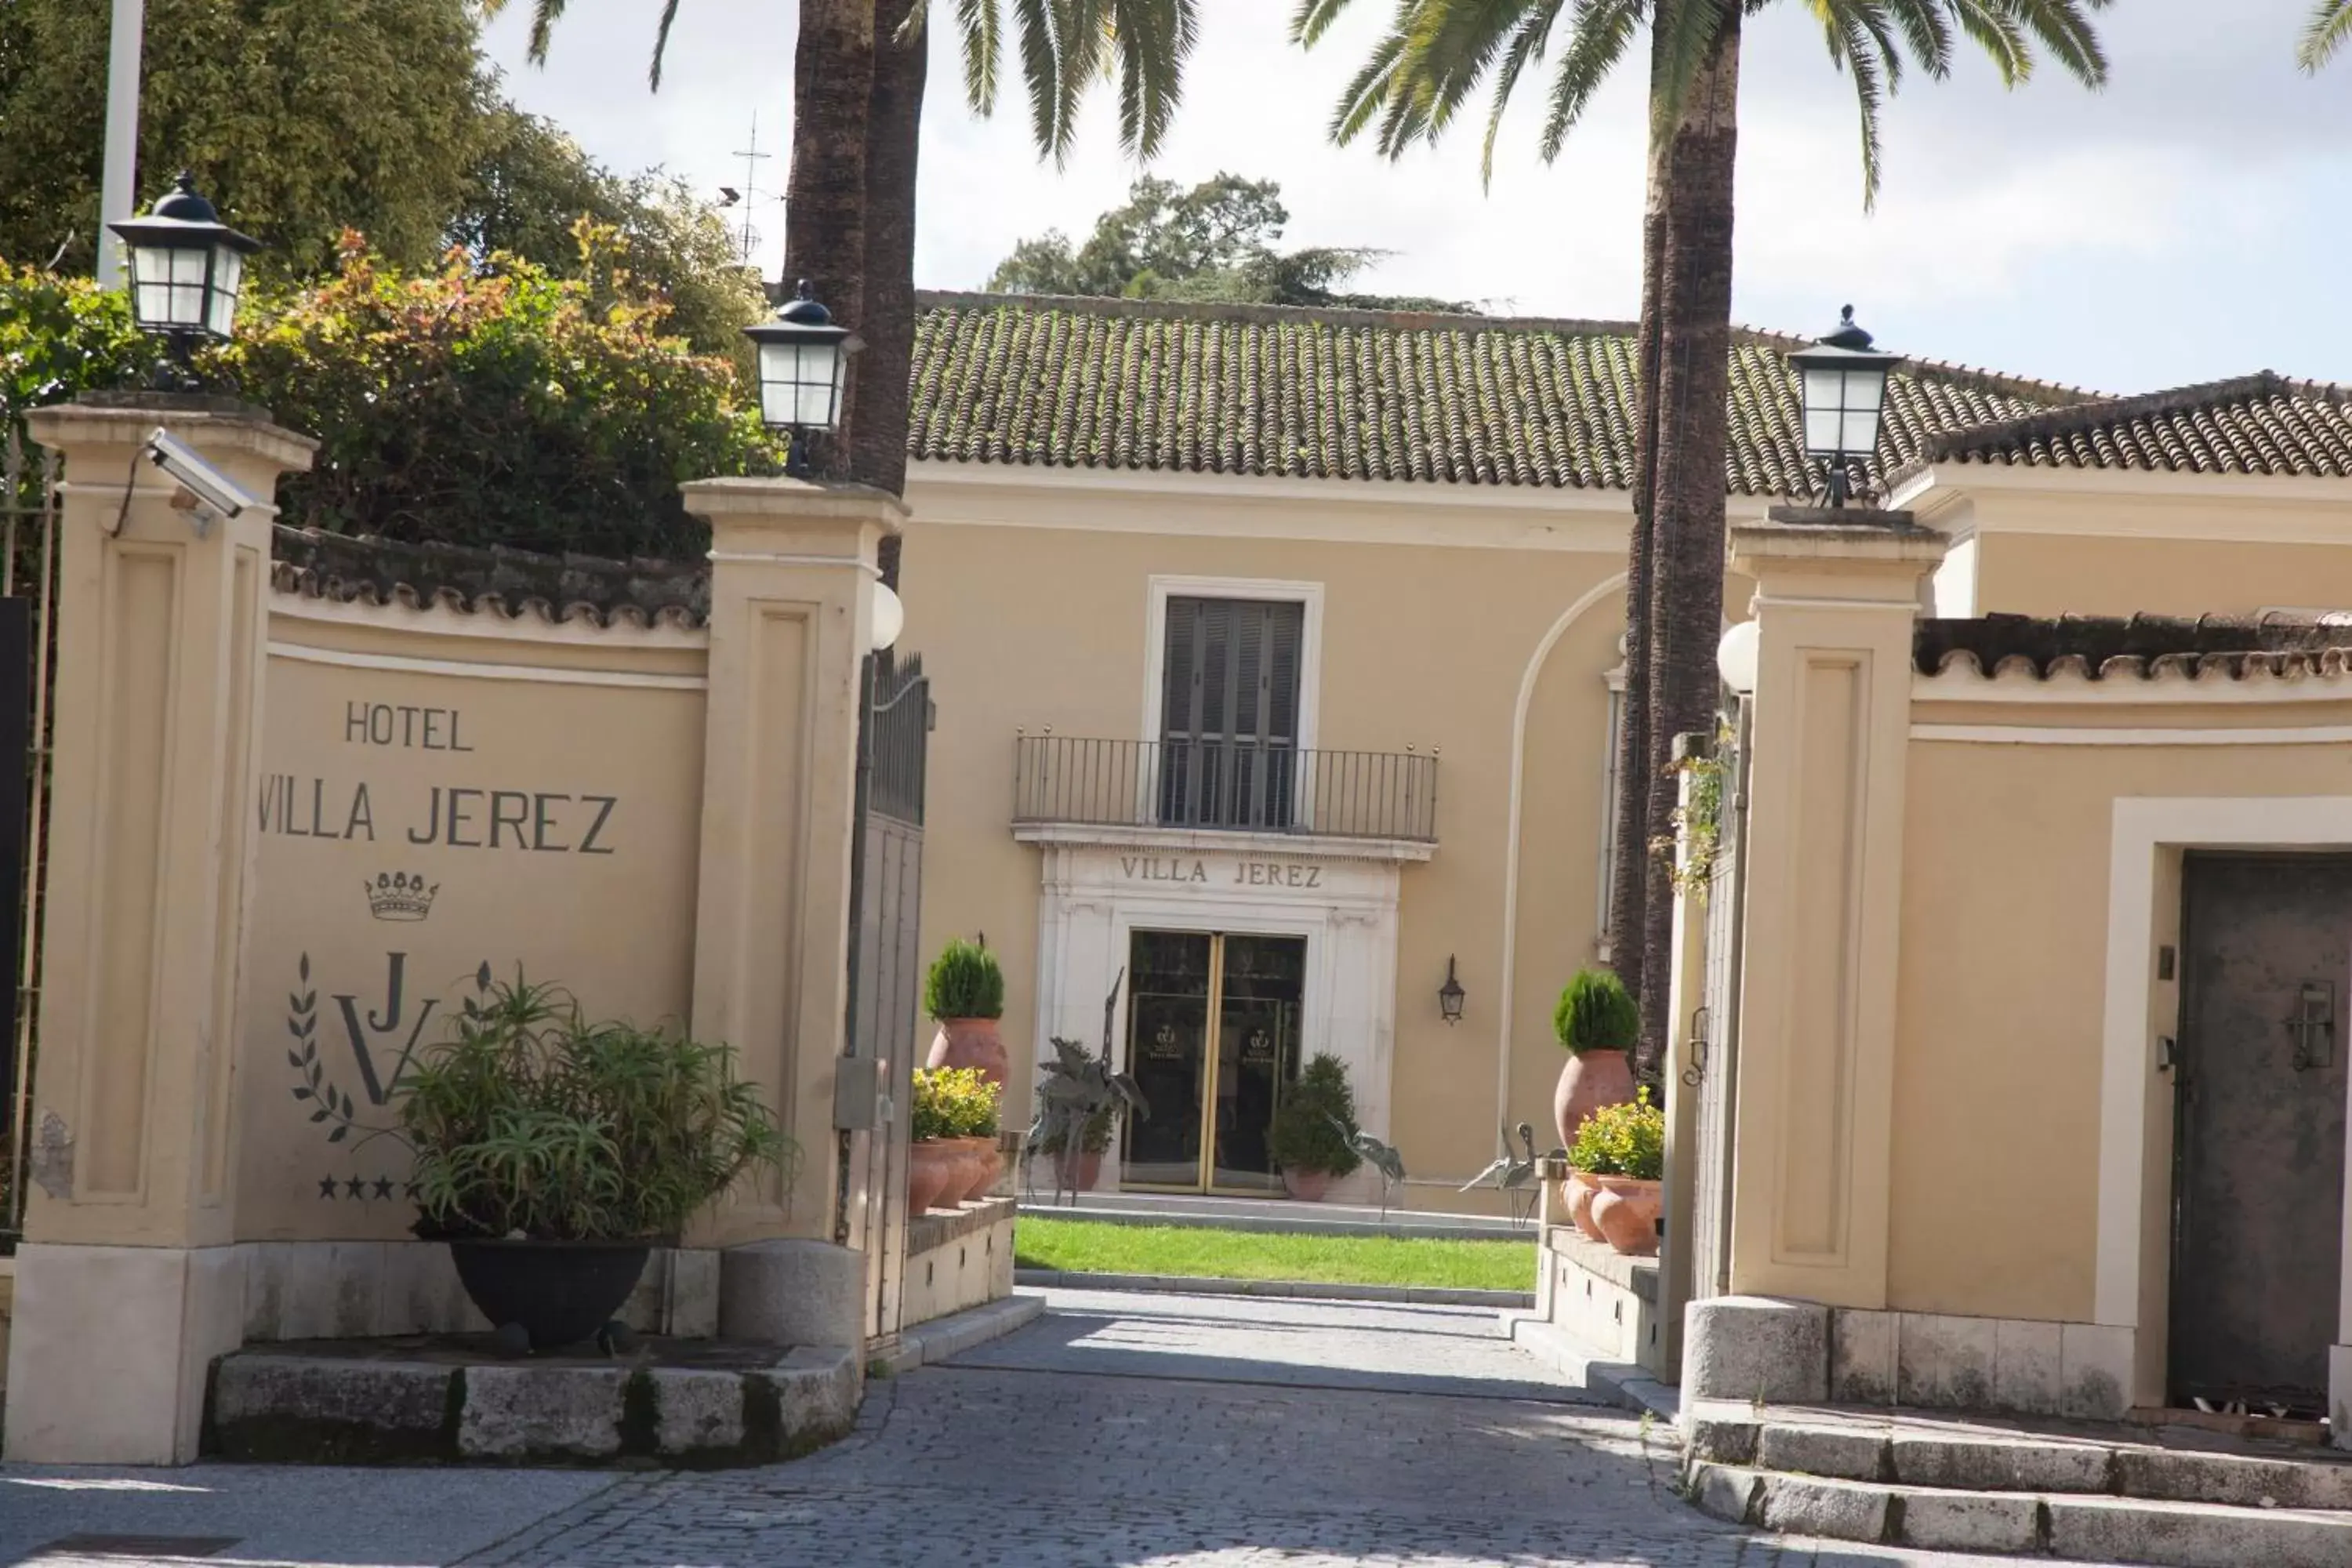 Facade/entrance, Property Building in Villa Jerez